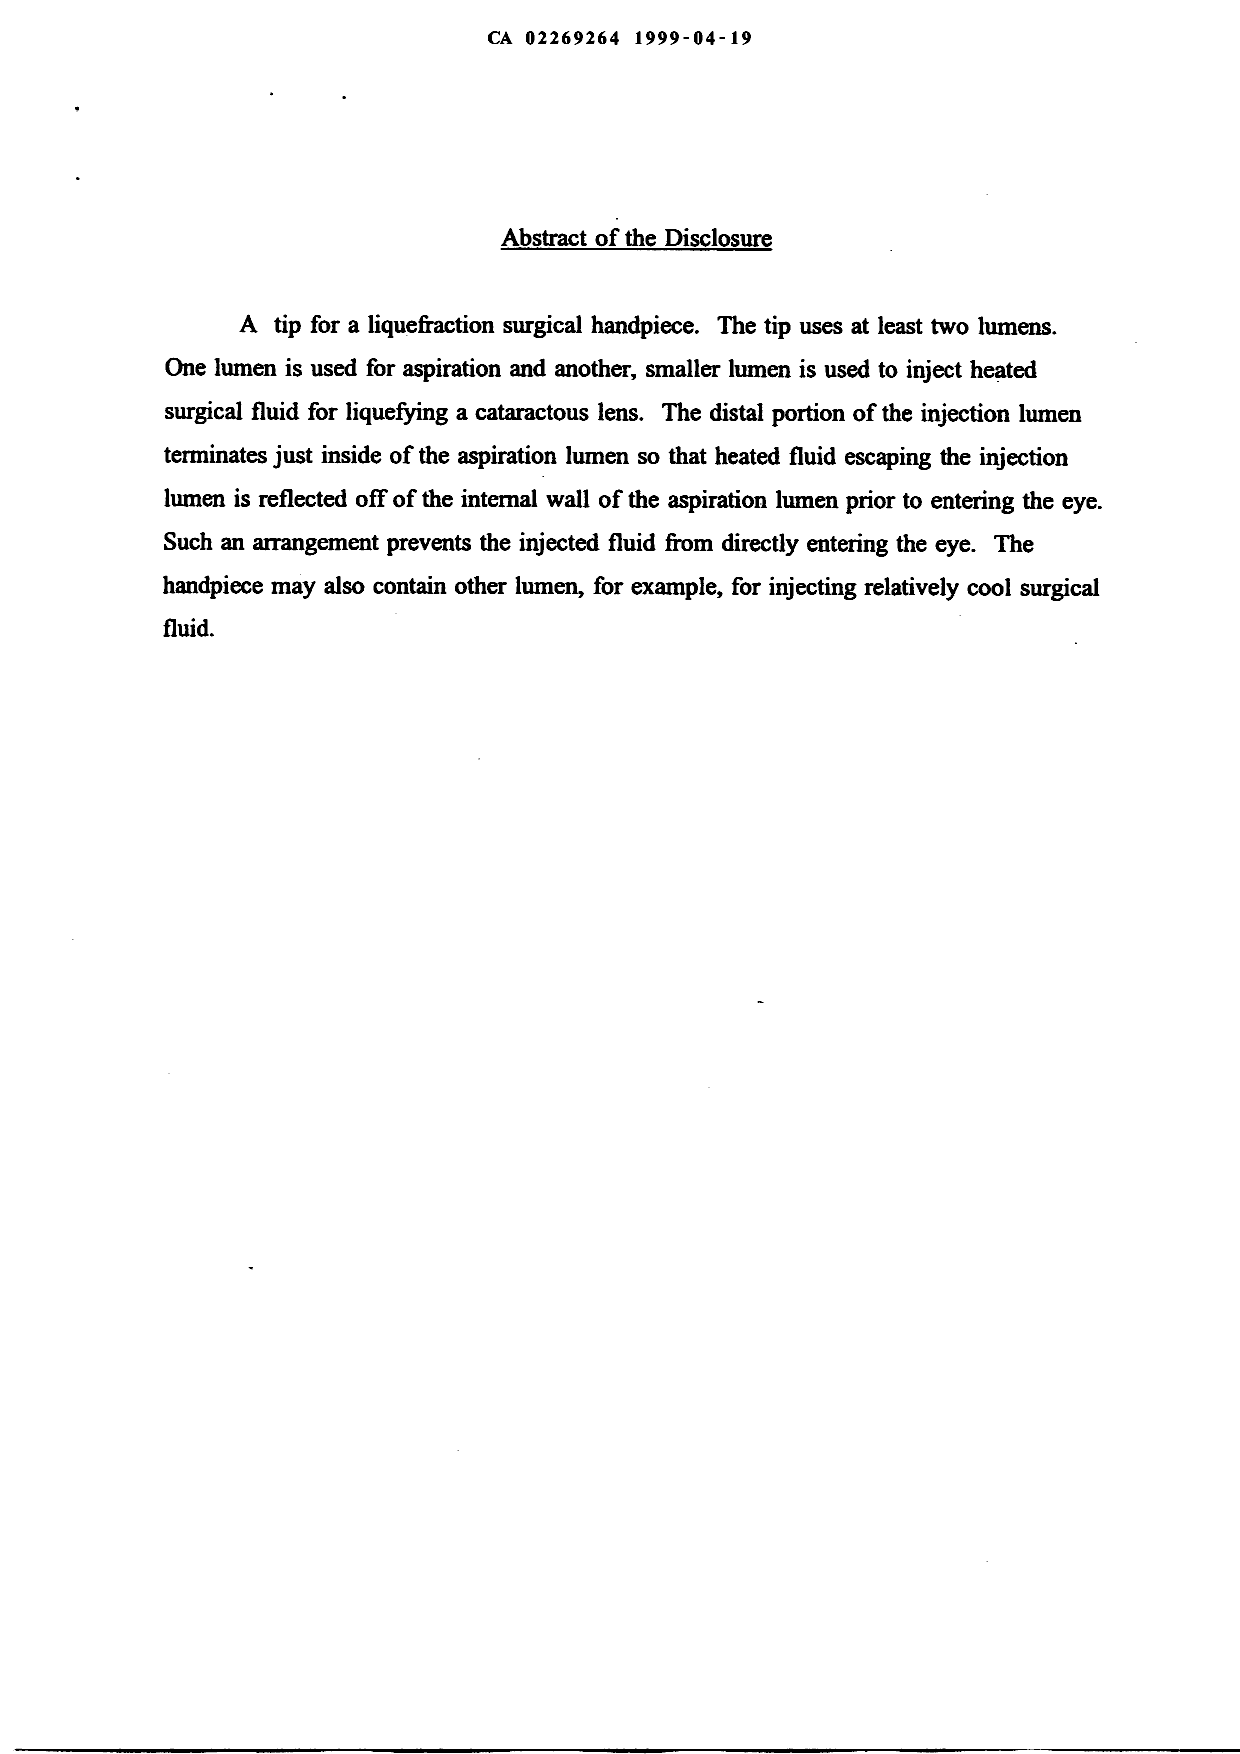 Document de brevet canadien 2269264. Abrégé 19990419. Image 1 de 1